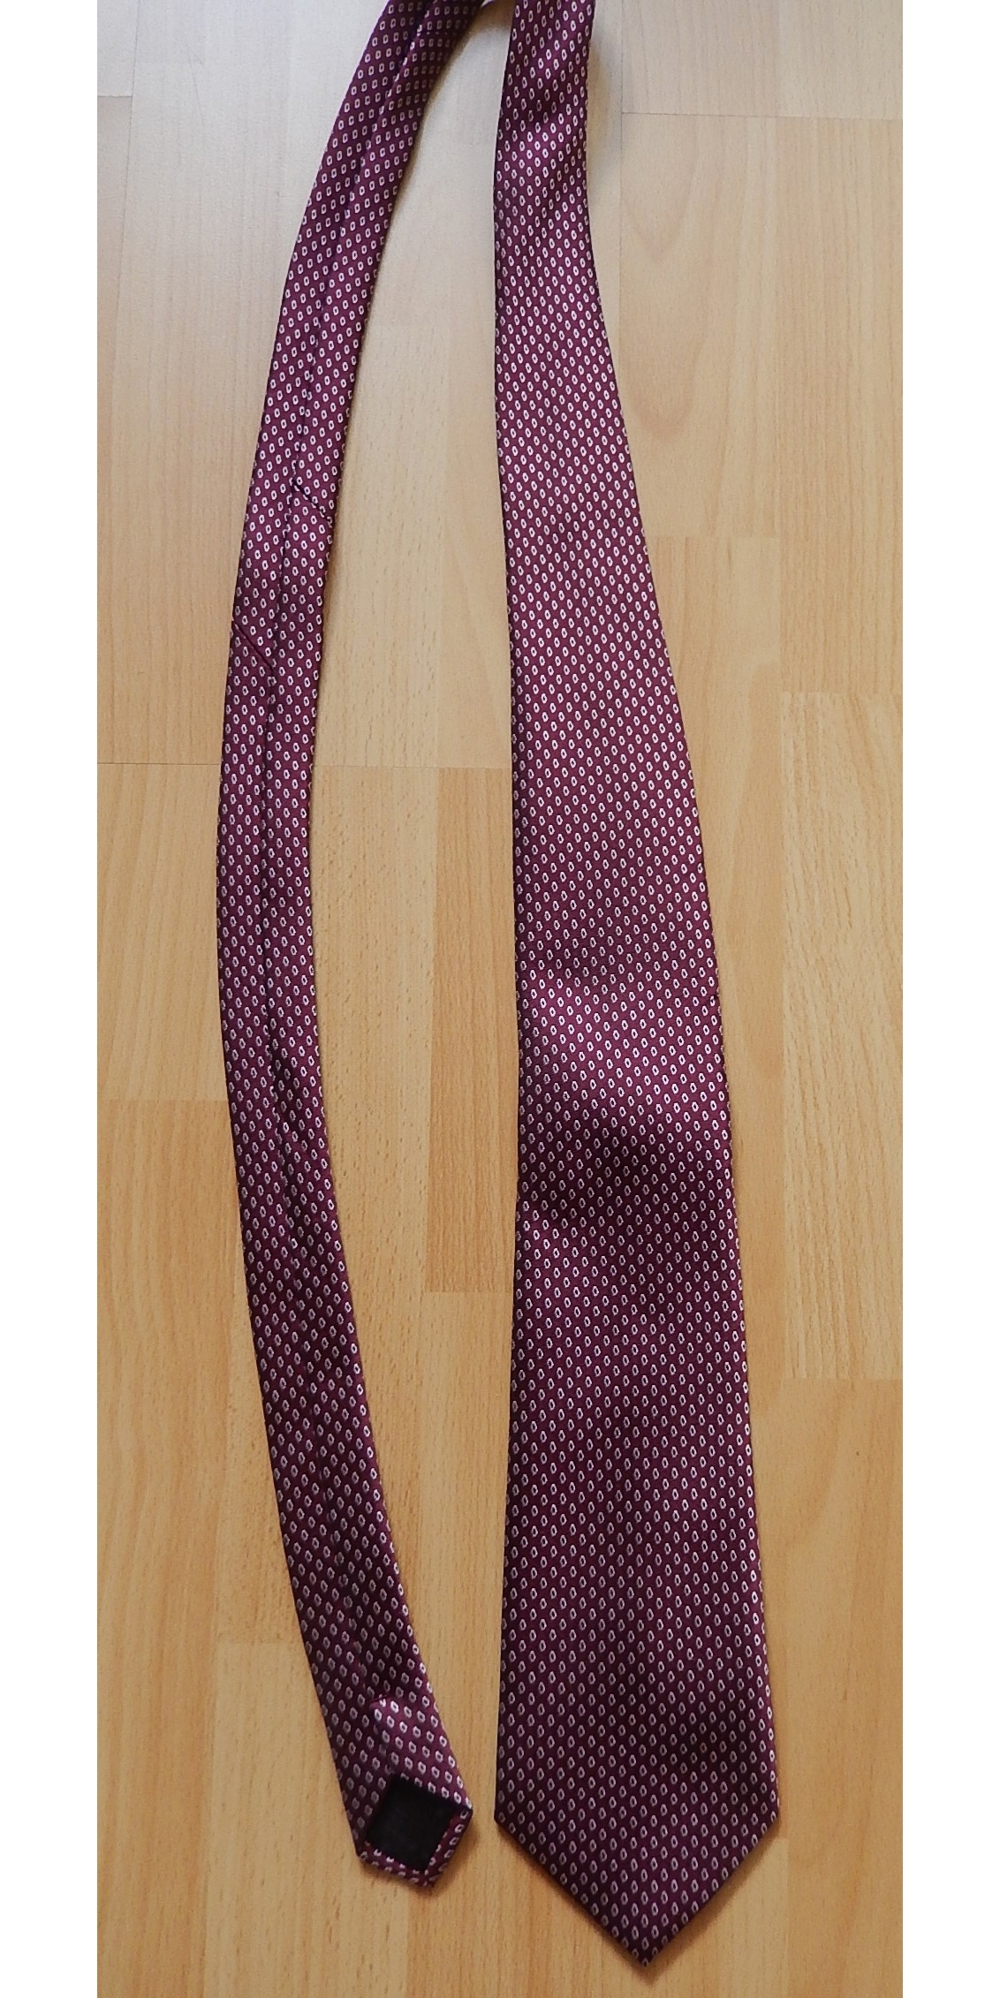 Krawatte CANDA - weinrot mit kleinem Muster - TOP